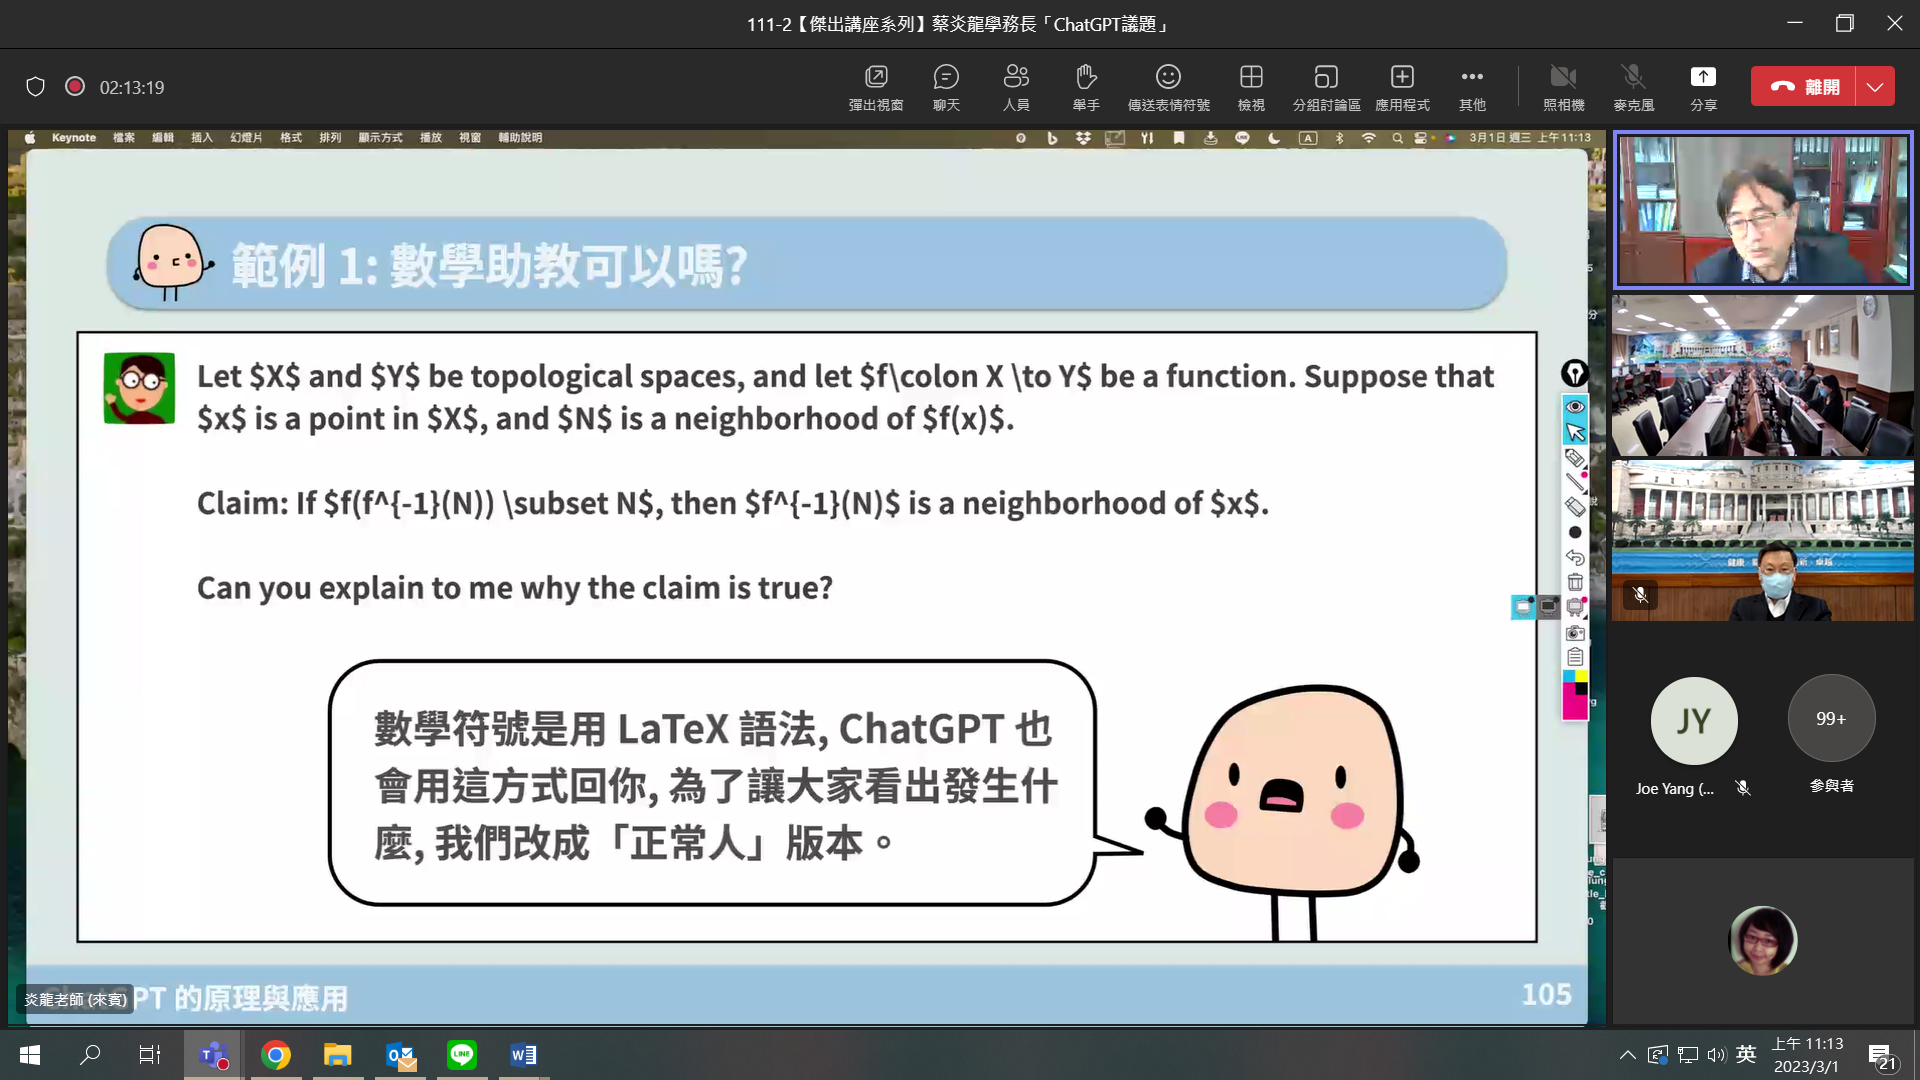 圖為政大學務長蔡炎龍(右上)以各種ChatGPT使用範例，說明下對指令的重要性。